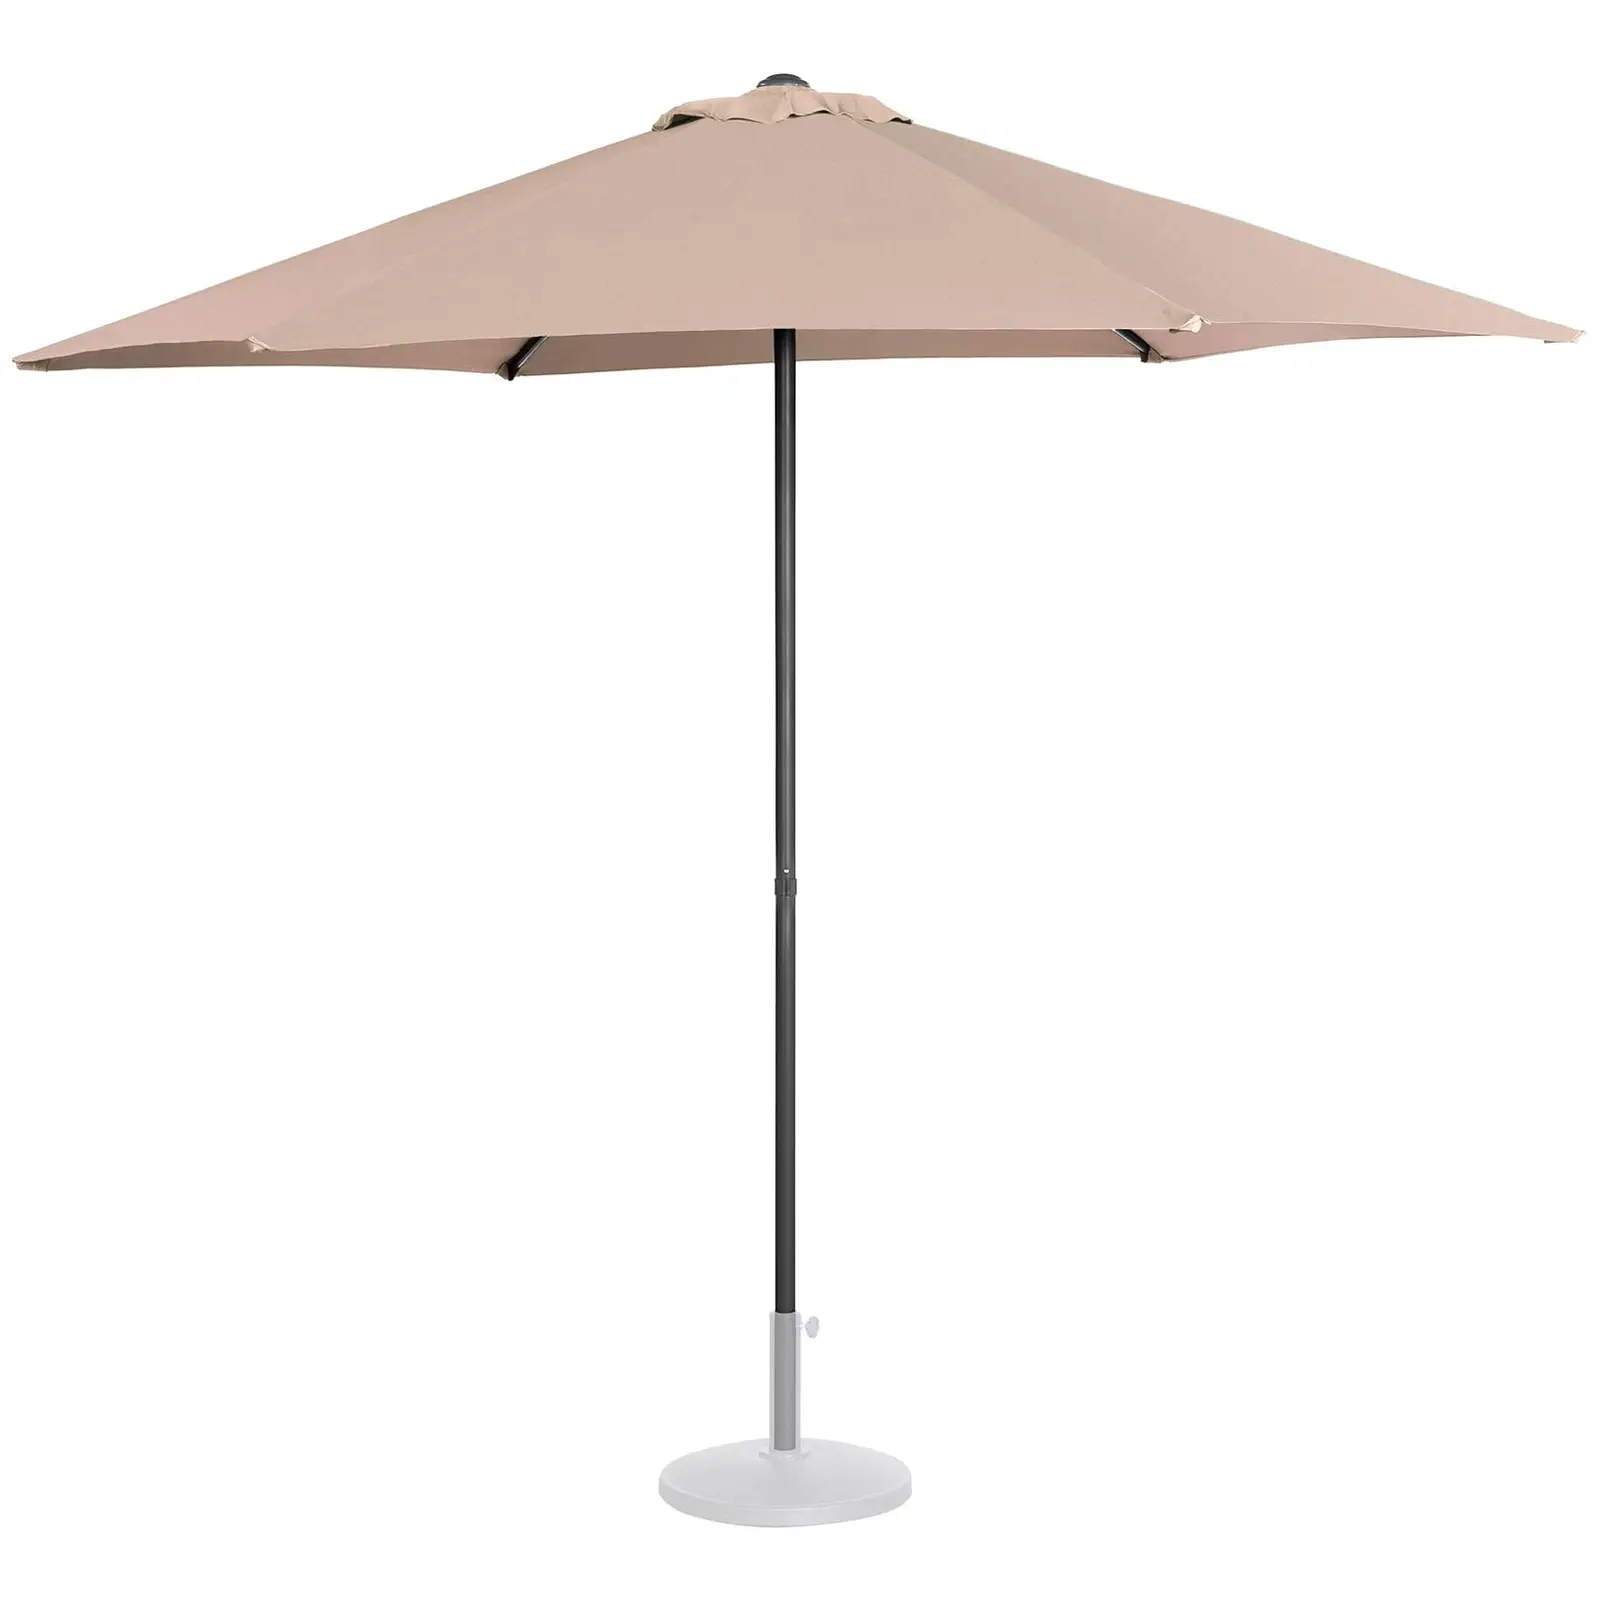 Garden umbrella large - cream - hexagonal - Ø 270 cm